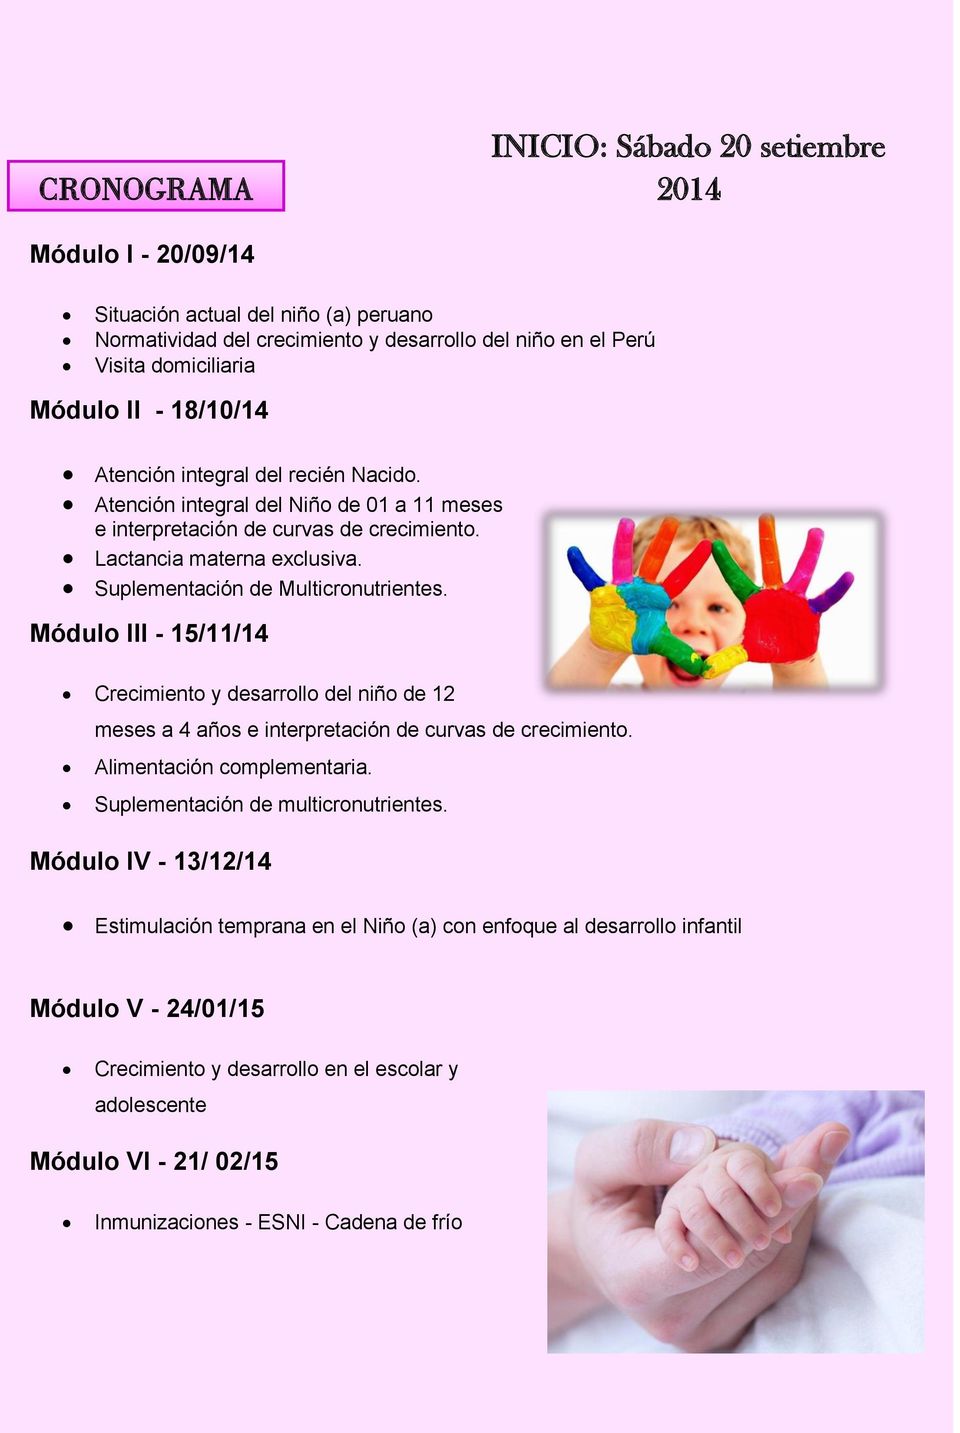 Módulo III - 15/11/14 Crecimiento y desarrollo del niño de 12 meses a 4 años e interpretación de curvas de crecimiento. Alimentación complementaria. Suplementación de multicronutrientes.